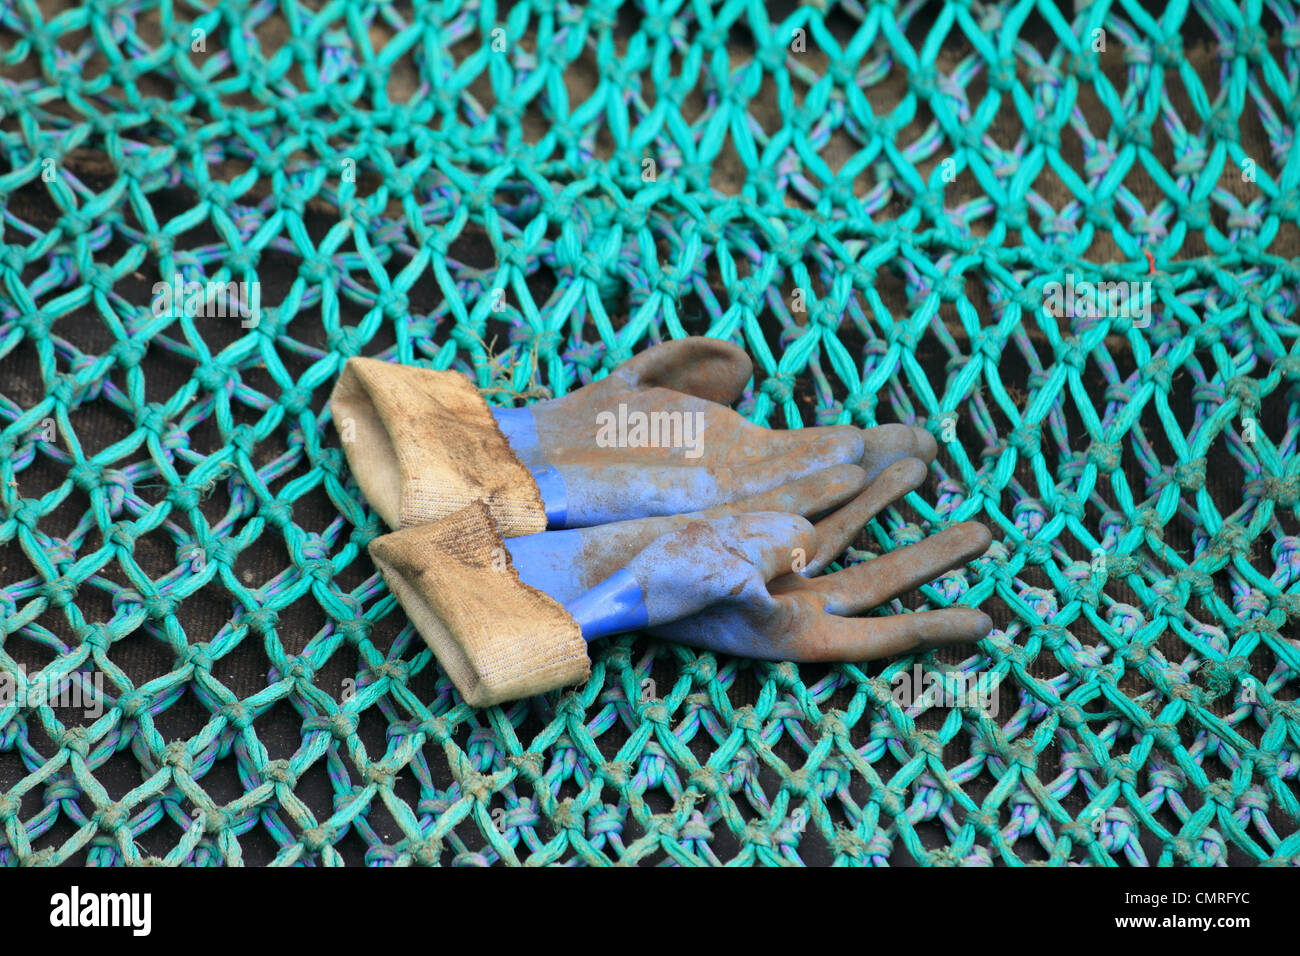 Pares de guantes de goma azul barro desechado en una gran red de pesca verde de malla Foto de stock